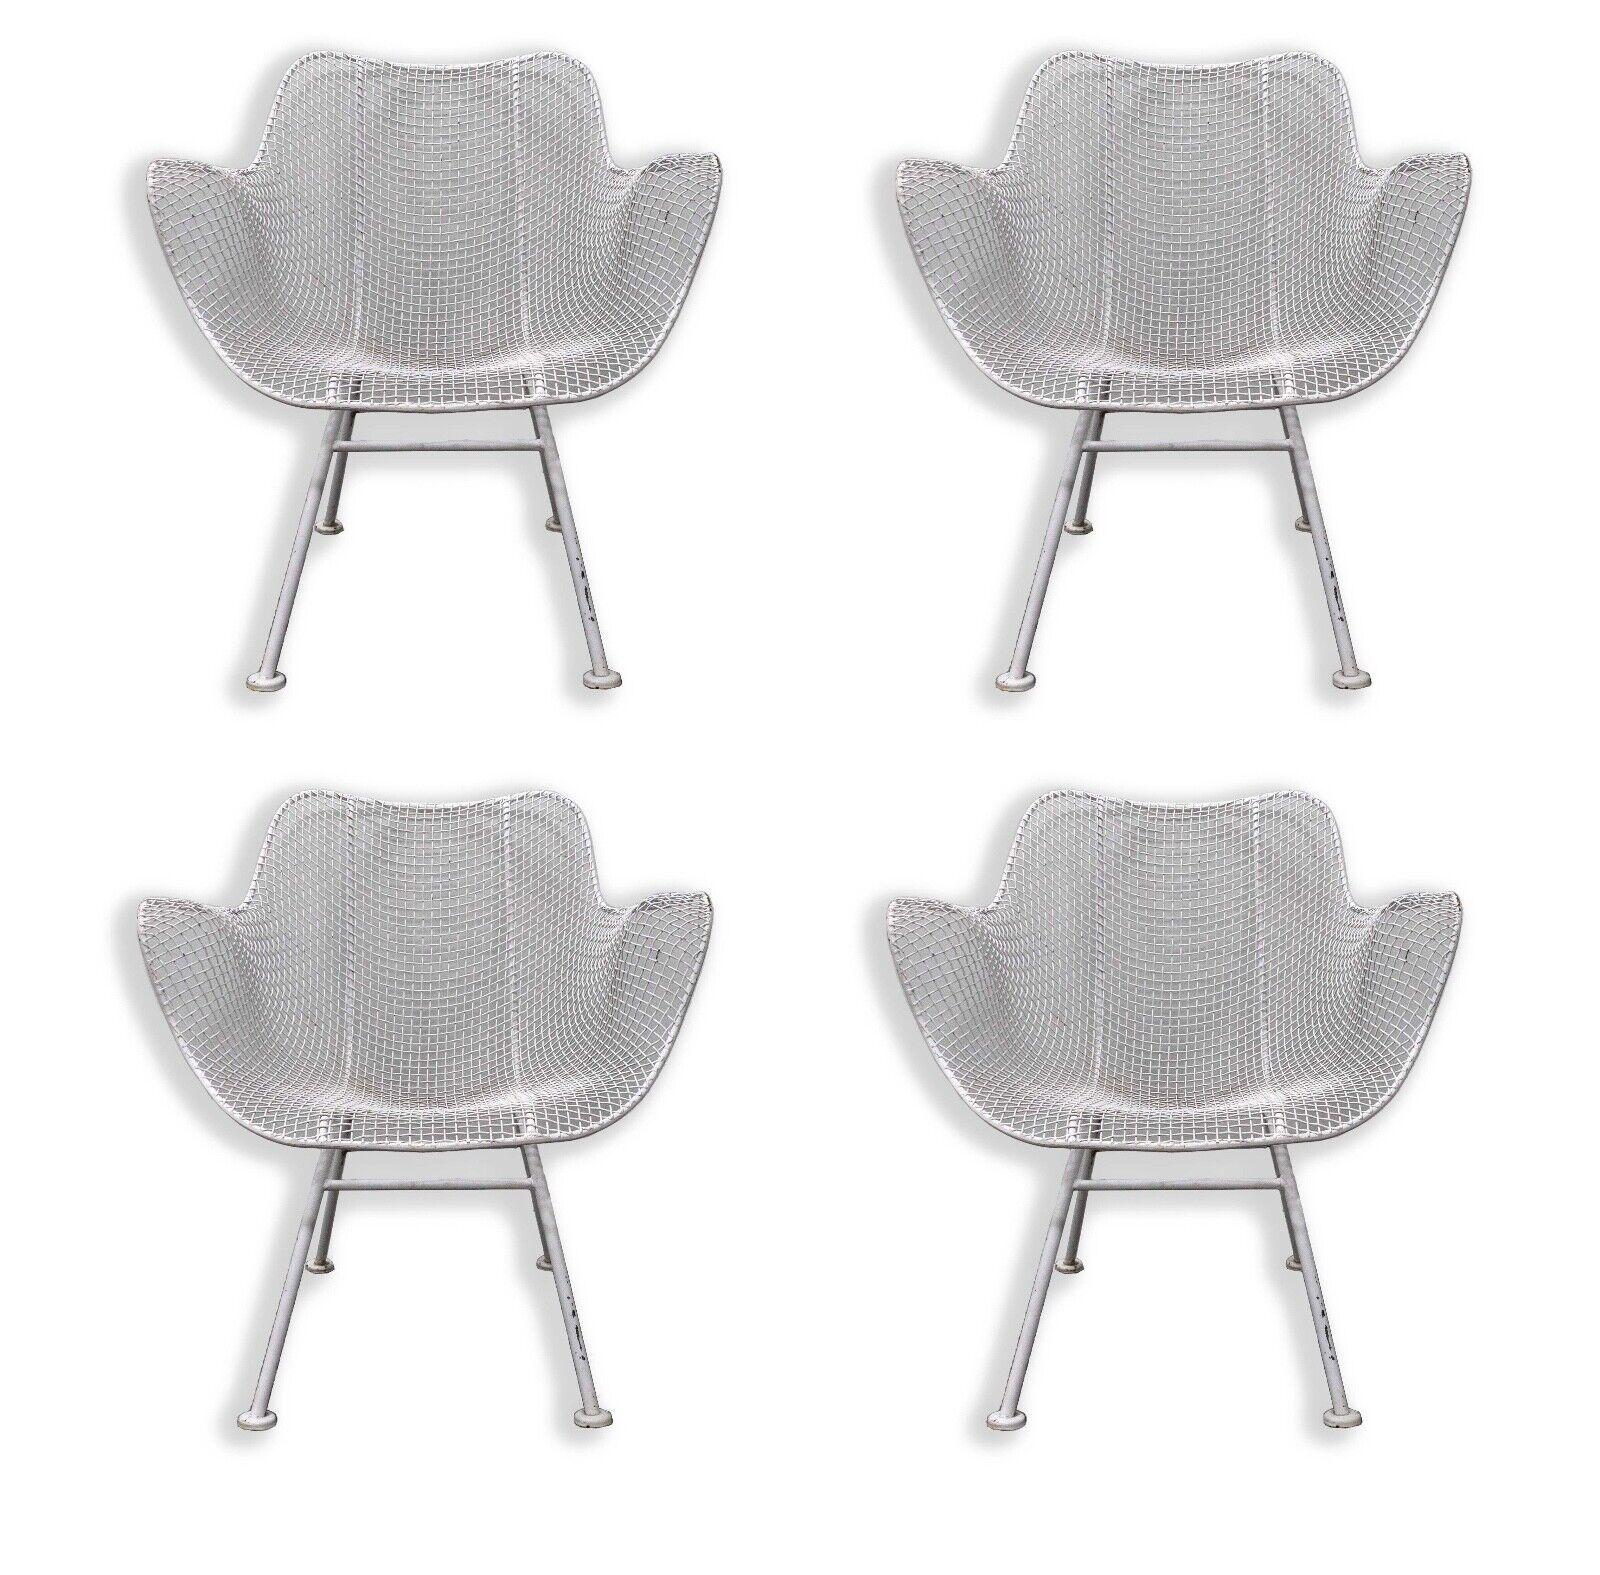 La table hexagonale Sculptura White et les quatre chaises à accoudoirs de Woodard incarnent l'élégance et la sophistication du milieu du siècle dernier. Fabriquée avec précision et souci du détail, la table hexagonale met en valeur le design